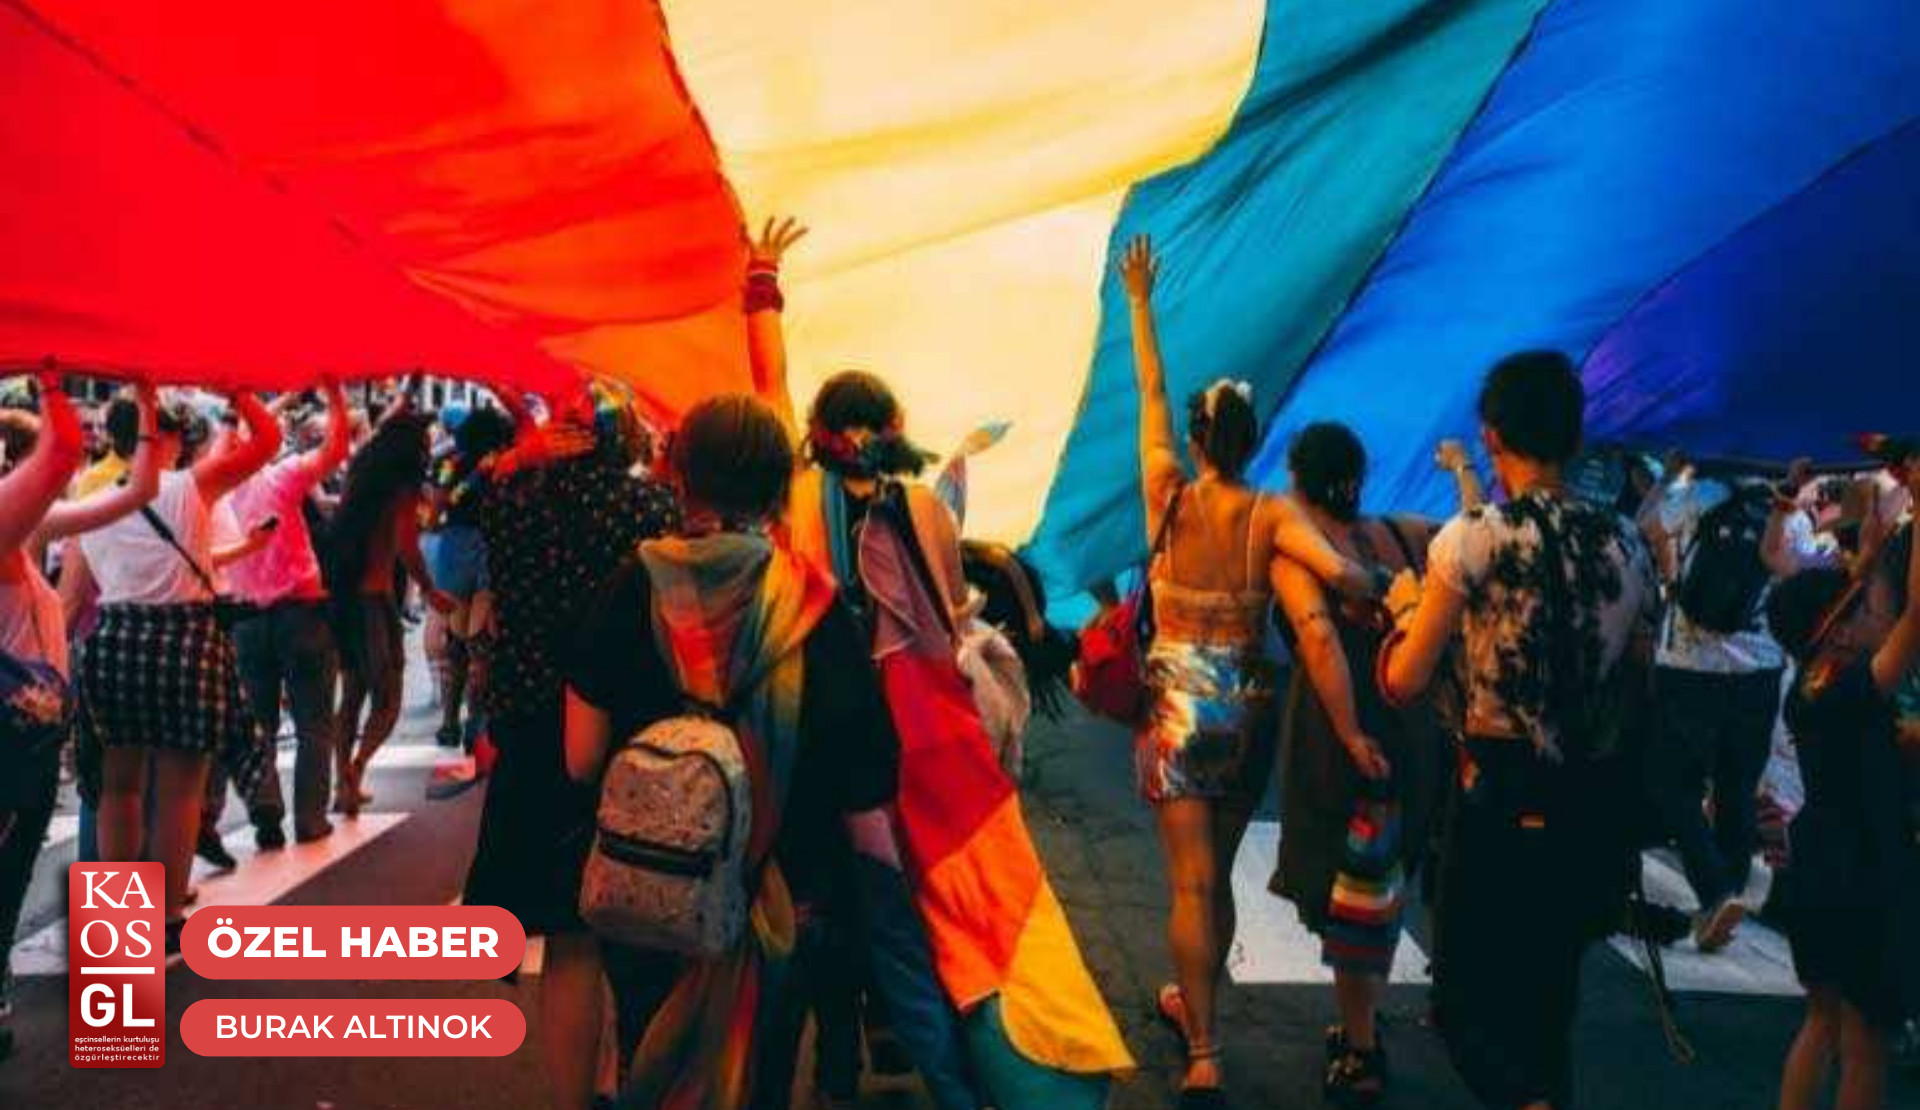 Fas’taki ayrımcı yasalar, LGBTIQ+’ların yaşamını zorlaştırıyor | Kaos GL - LGBTİ+ Haber Portalı Haber